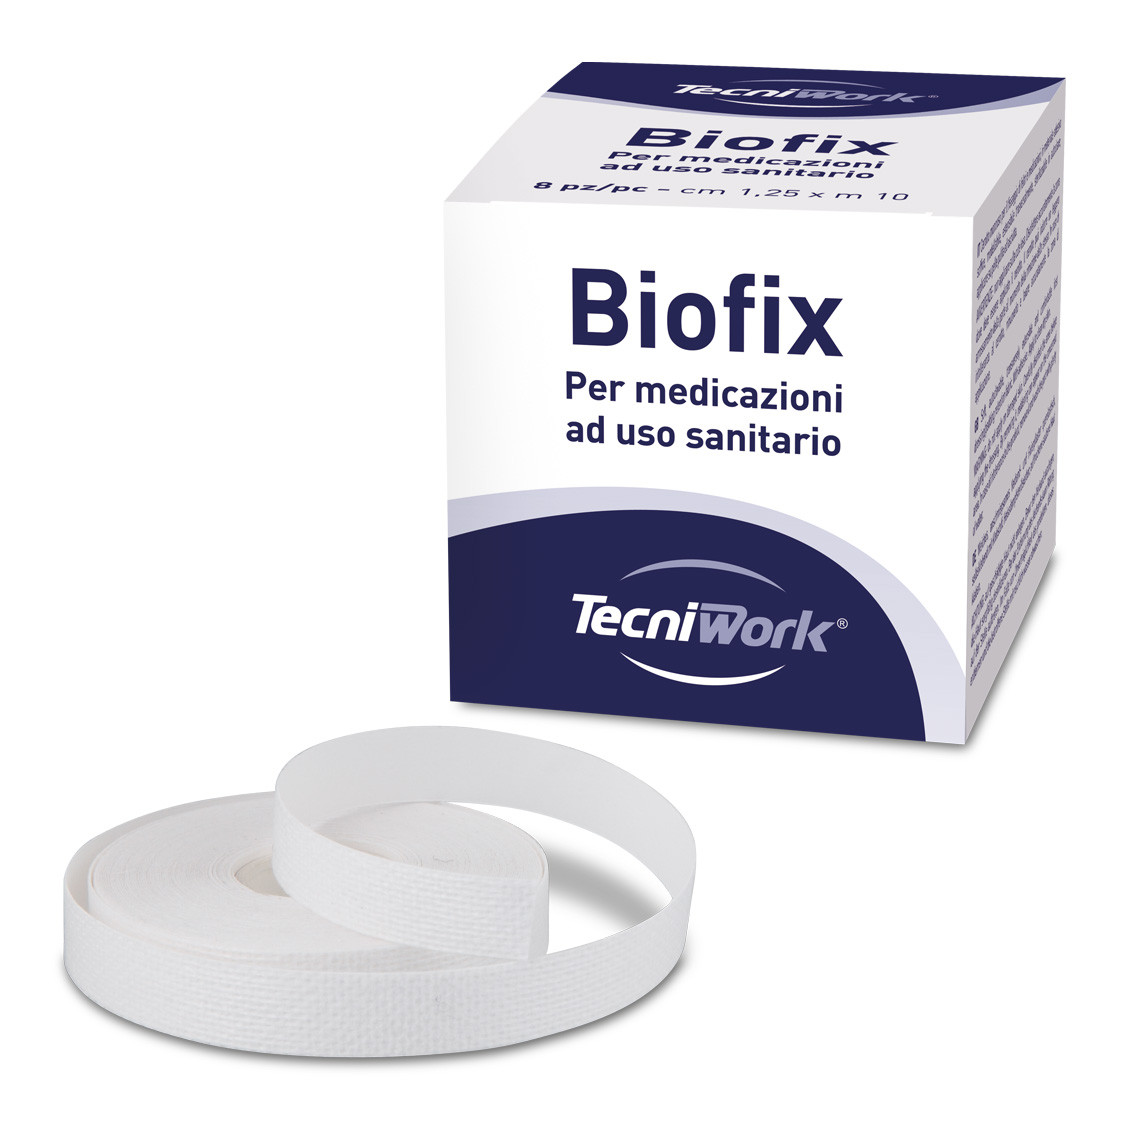 Biofix - weiches Pflaster zur Fixierung von Filzen und Kompressen 5 cm x 10 m 2 Stk                    .